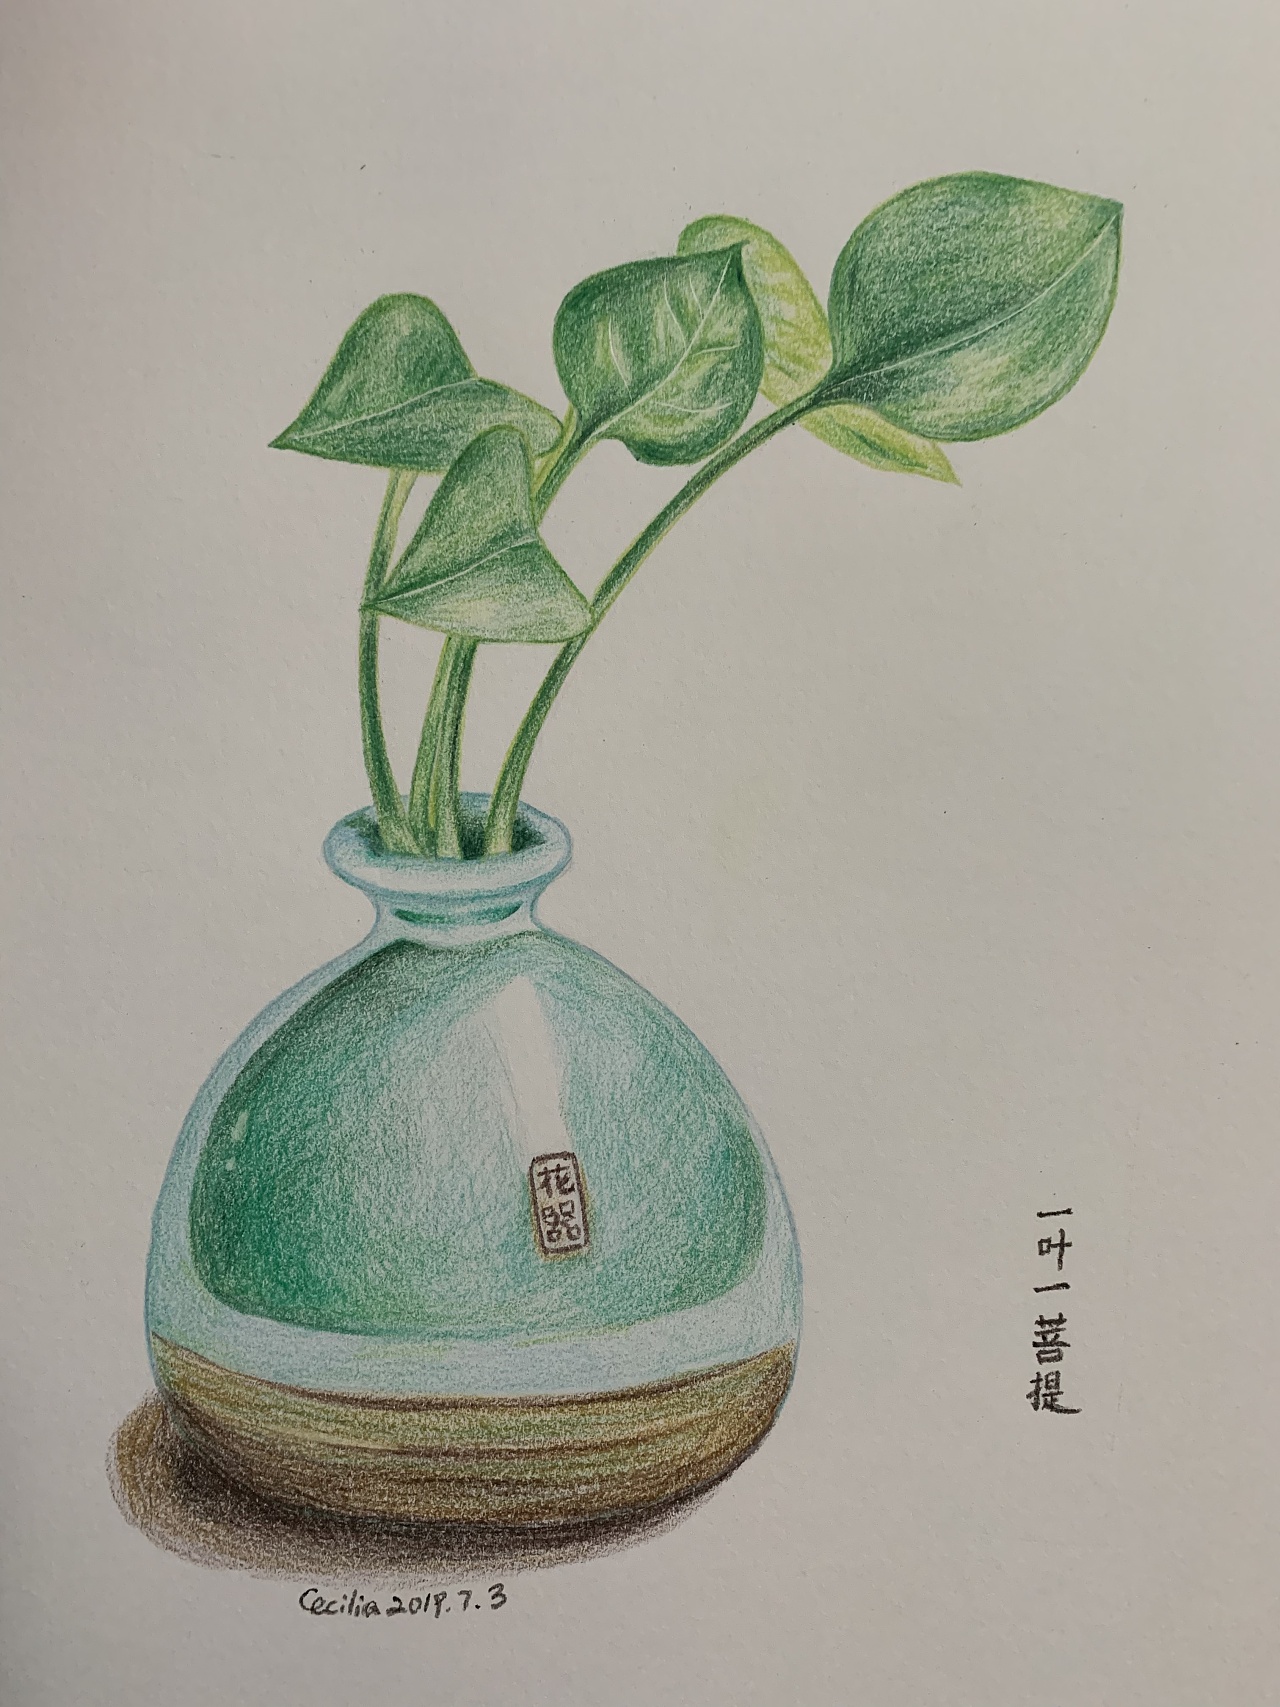 彩色铅笔手绘 步骤图 花瓶绿叶